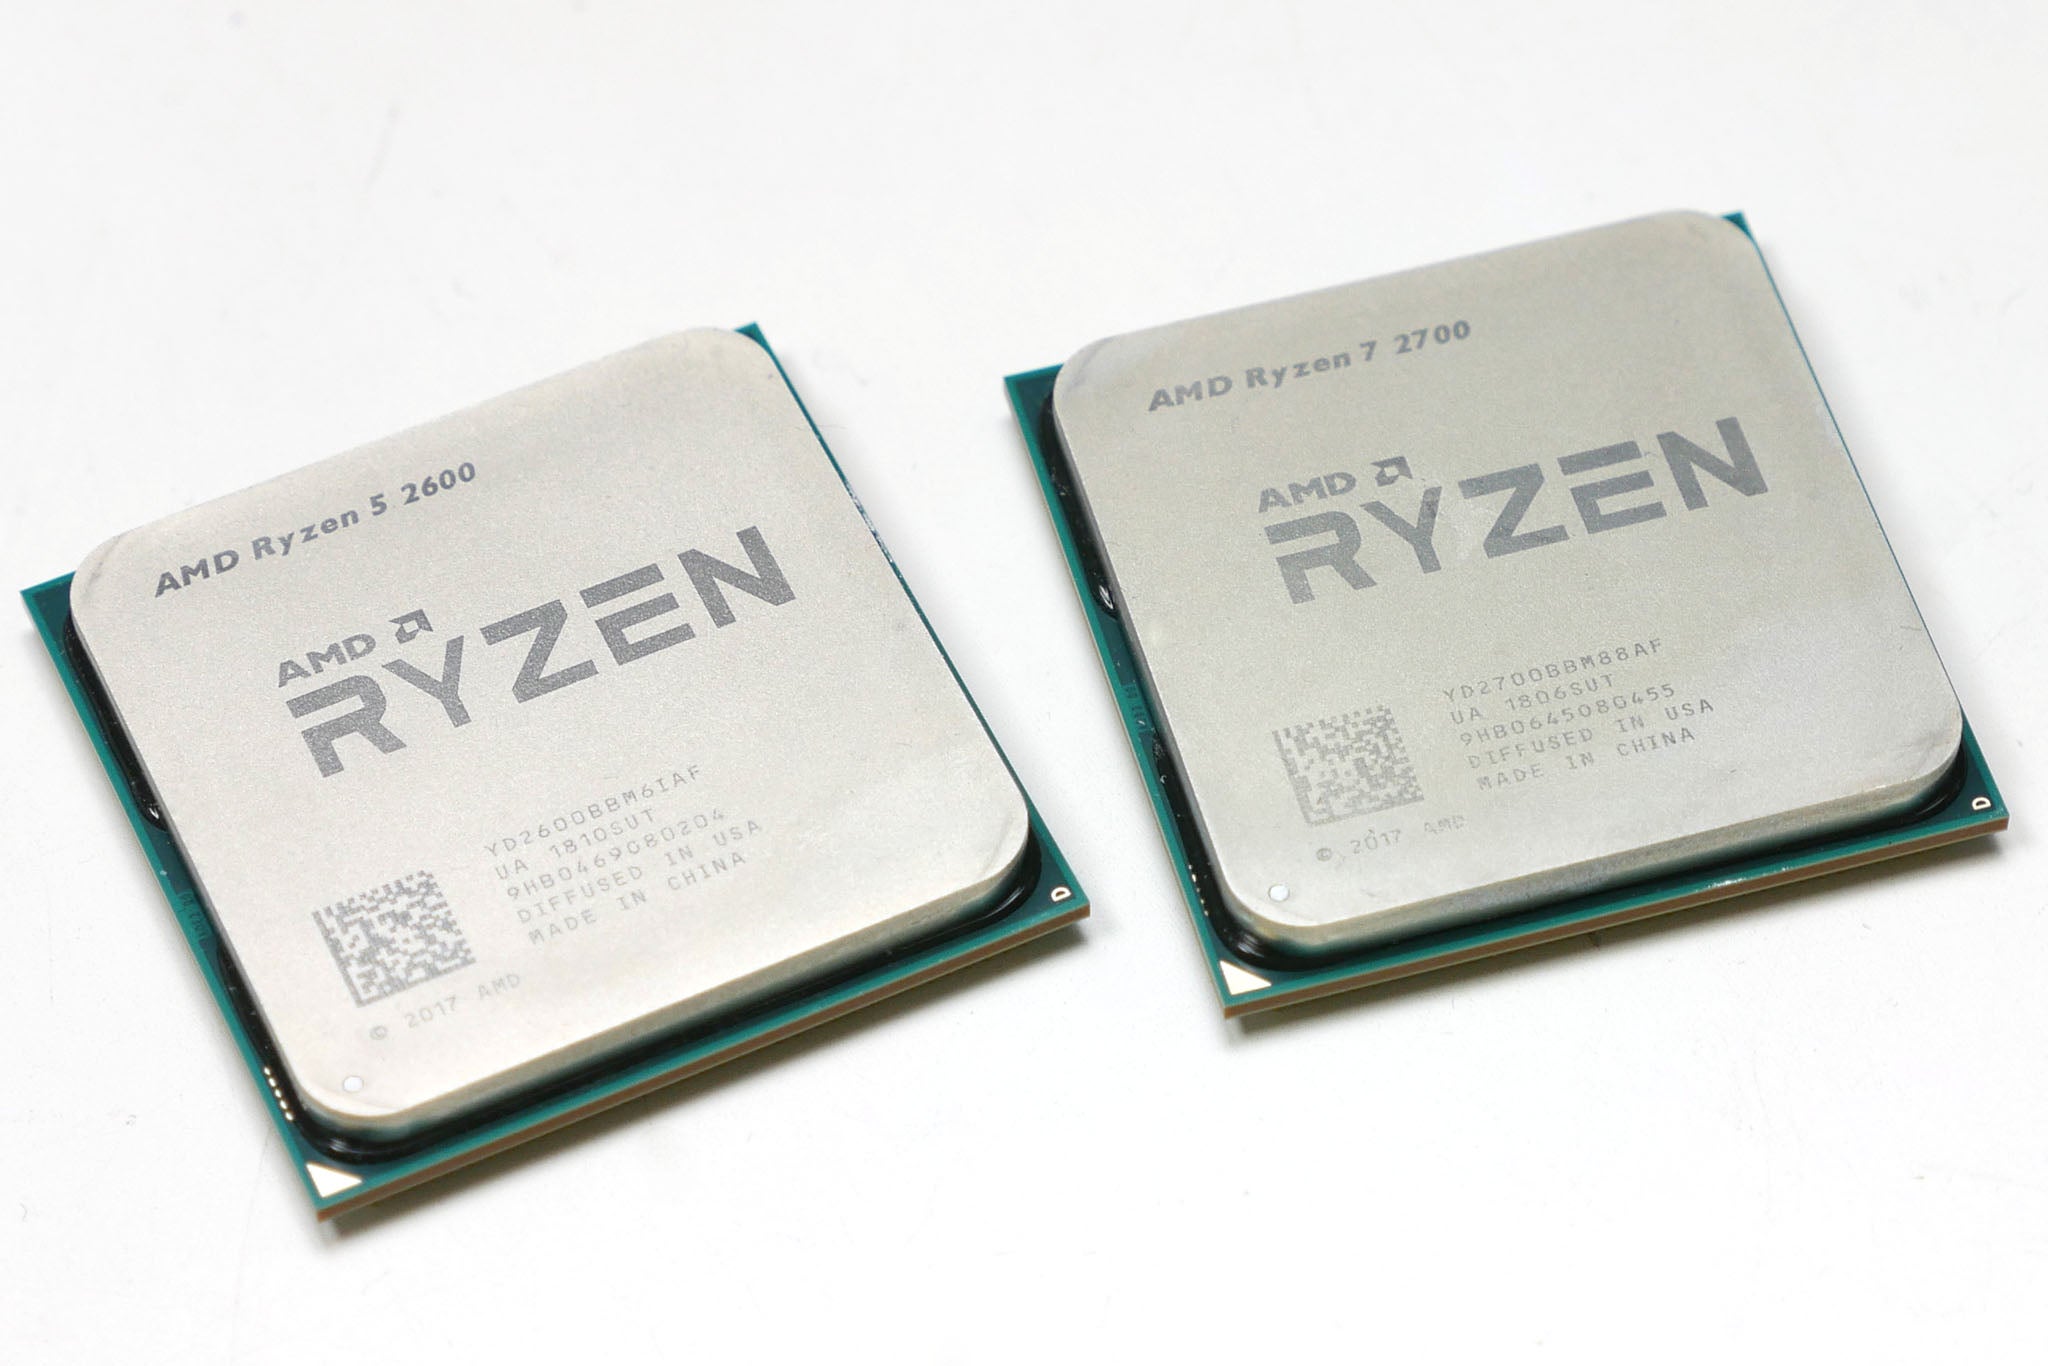 AMD Ryzen 7 2700 and Ryzen 5 2600 CPUs side by side.